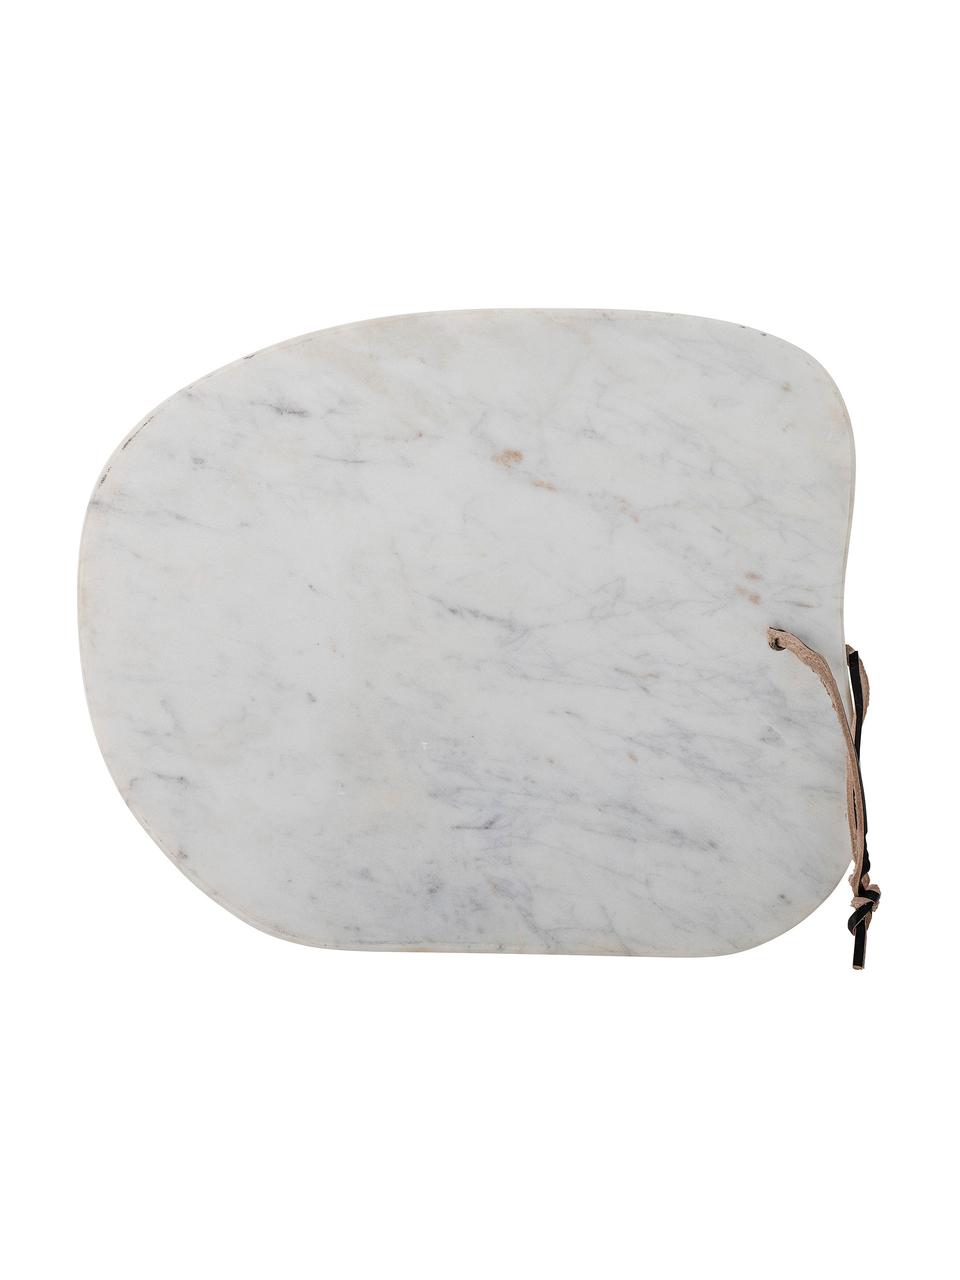 Tagliere in marmo grigio/bianco Damita, 33x27 cm, Grigio, bianco, marrone chiaro, nero, Lung. 33 x Larg. 27 cm